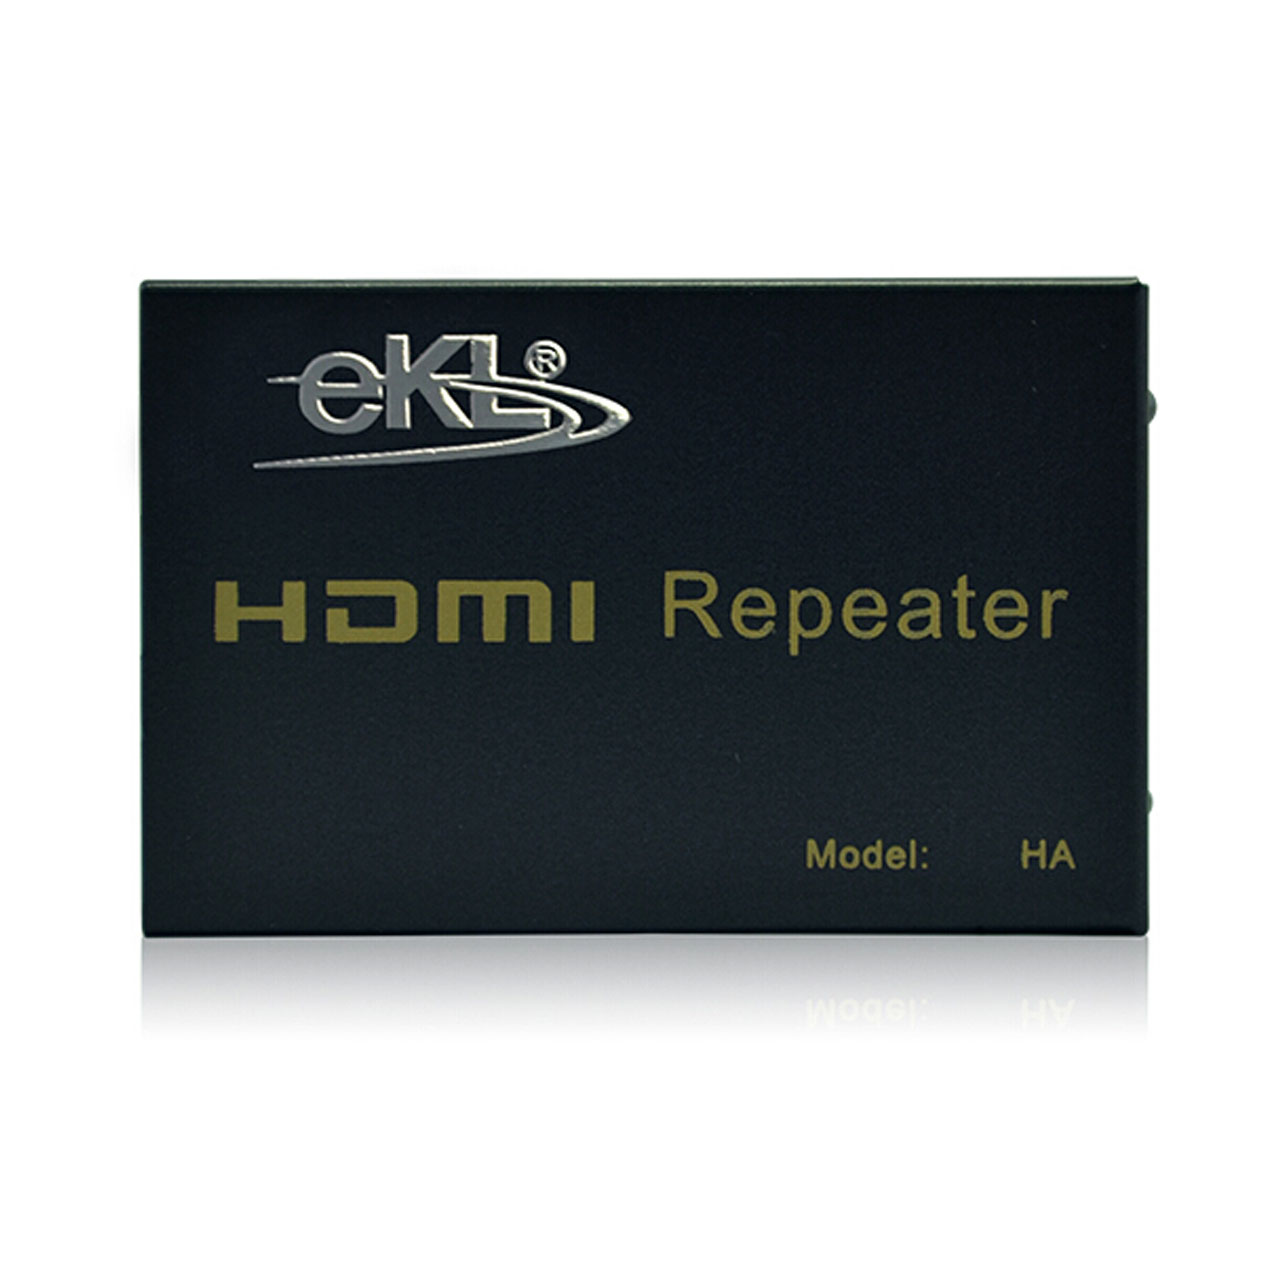 تقویت کننده سیگنال HDMI به همراه آداپتور تا 50 متر برند eKL